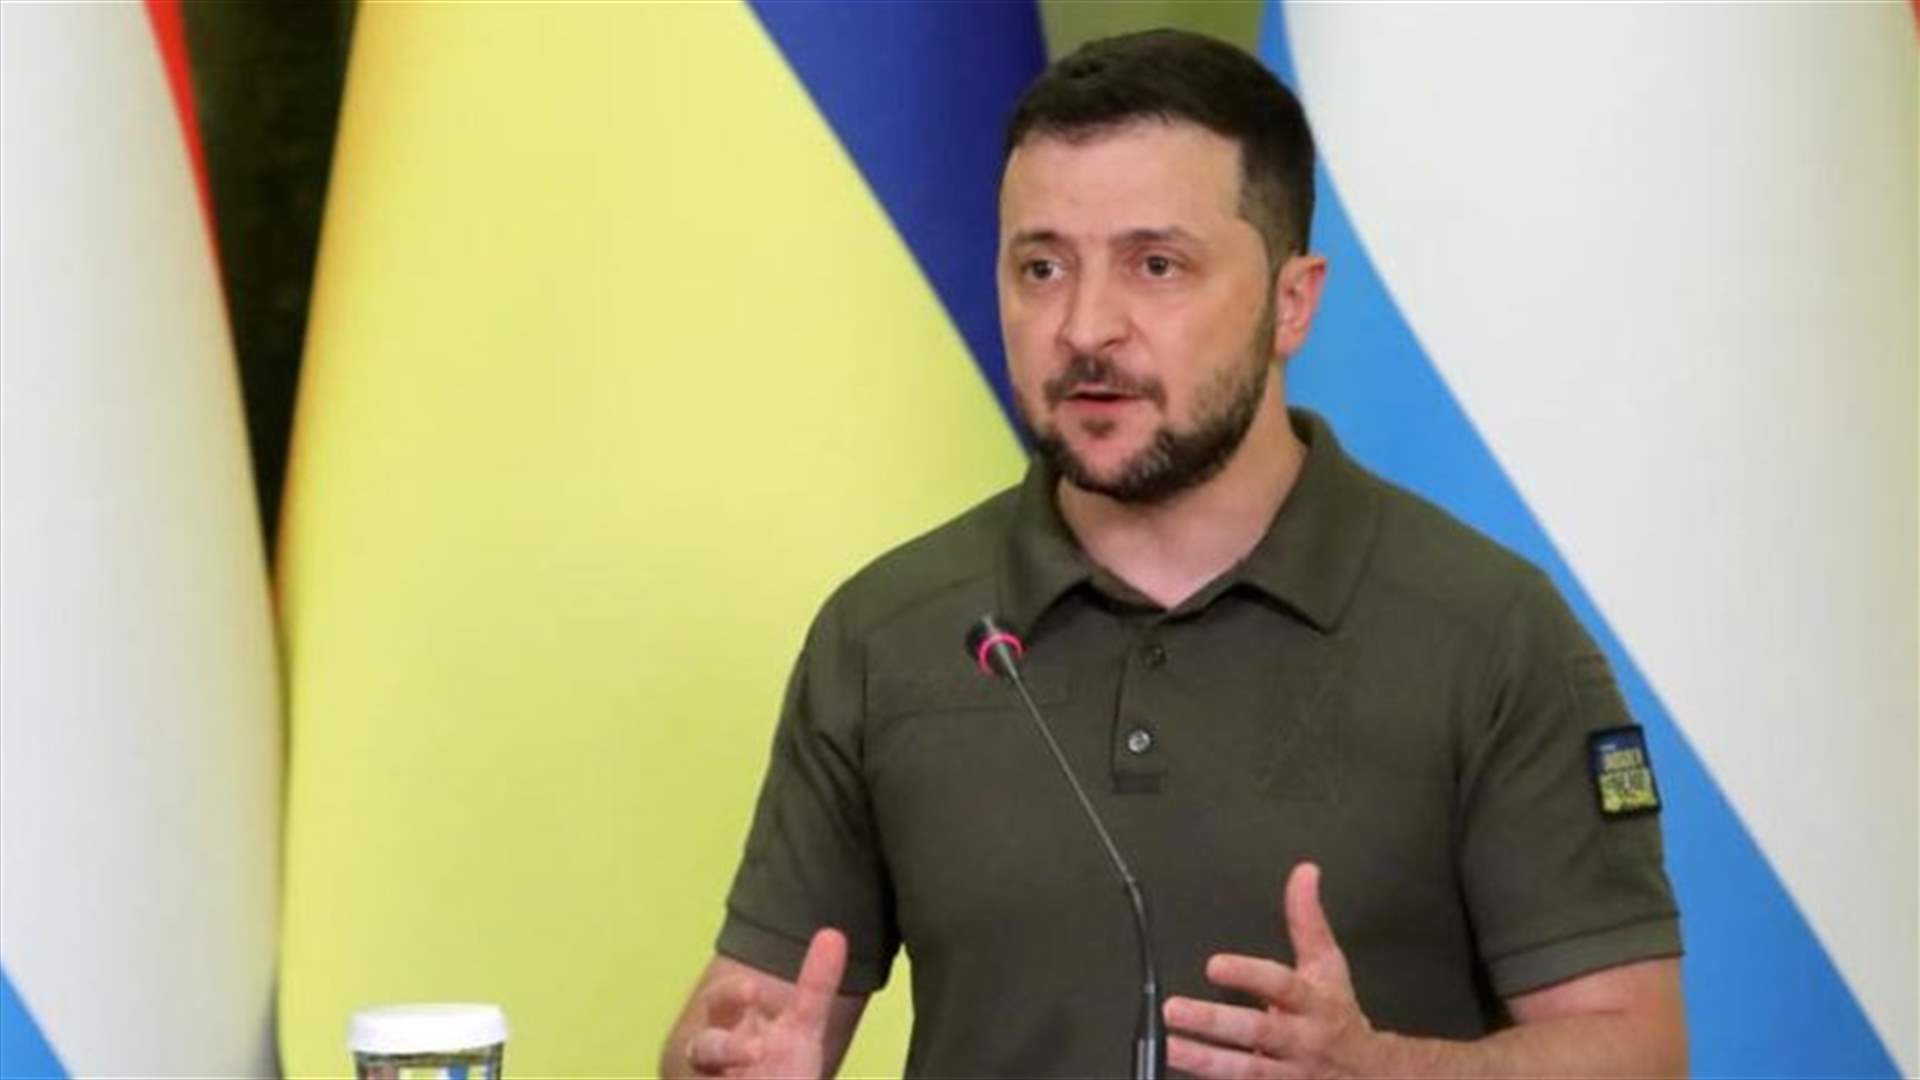 زيلينسكي: إعادة إعمار أوكرانيا مكلفة ومهمة مشتركة للعالم الديموقراطي